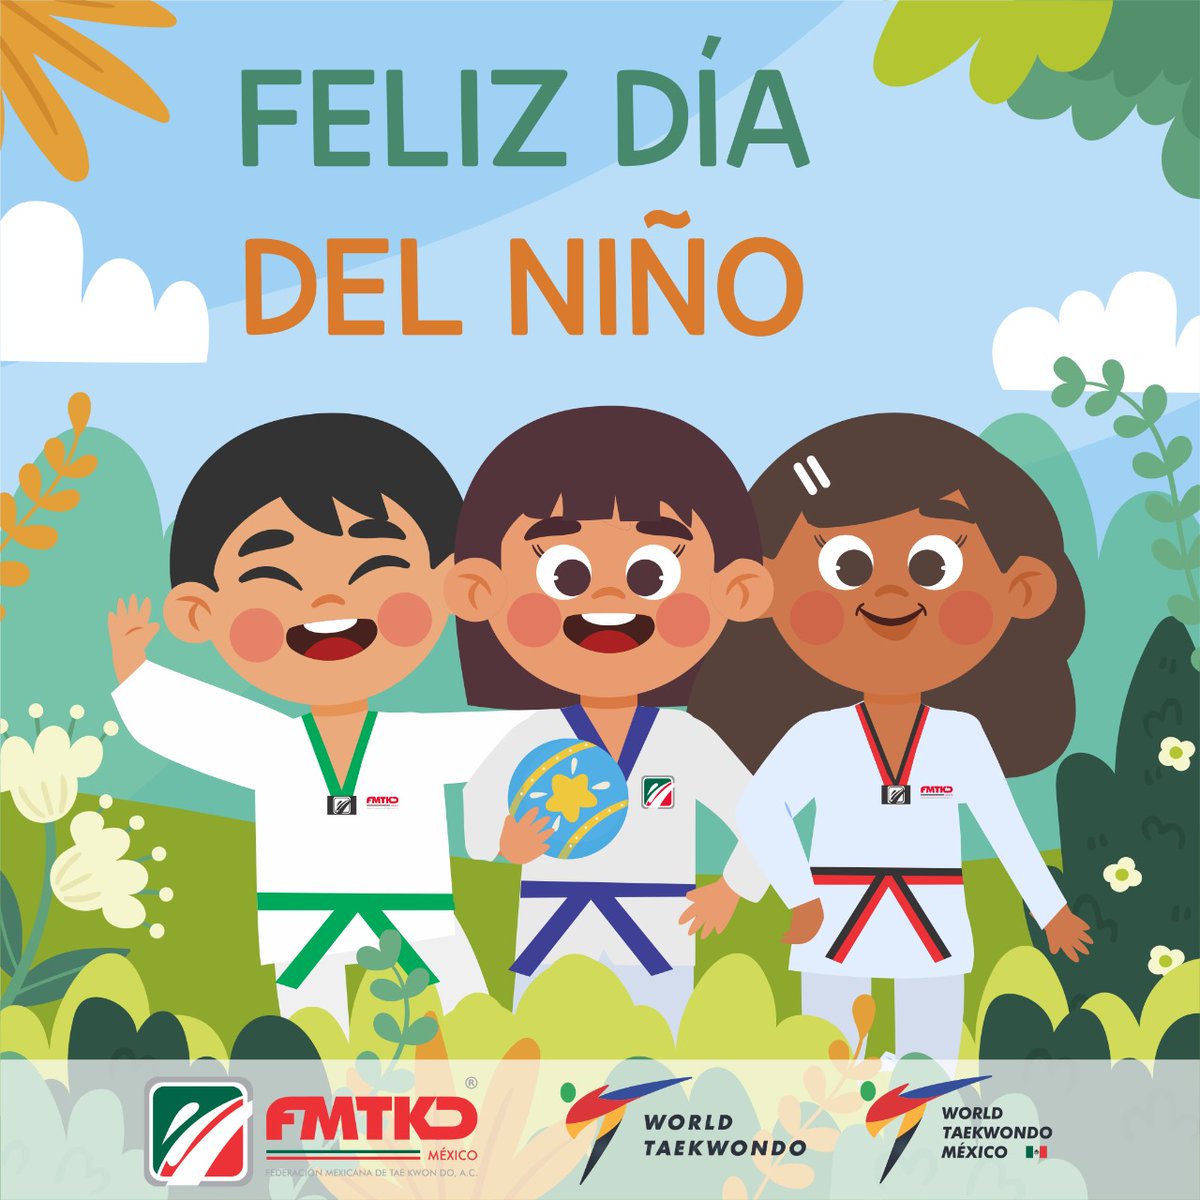 #felizdiadelniño “Los niños son el reflejo de nuestro futuro. Démosles razones para soñar y motivos para creer.” #Taekwondo